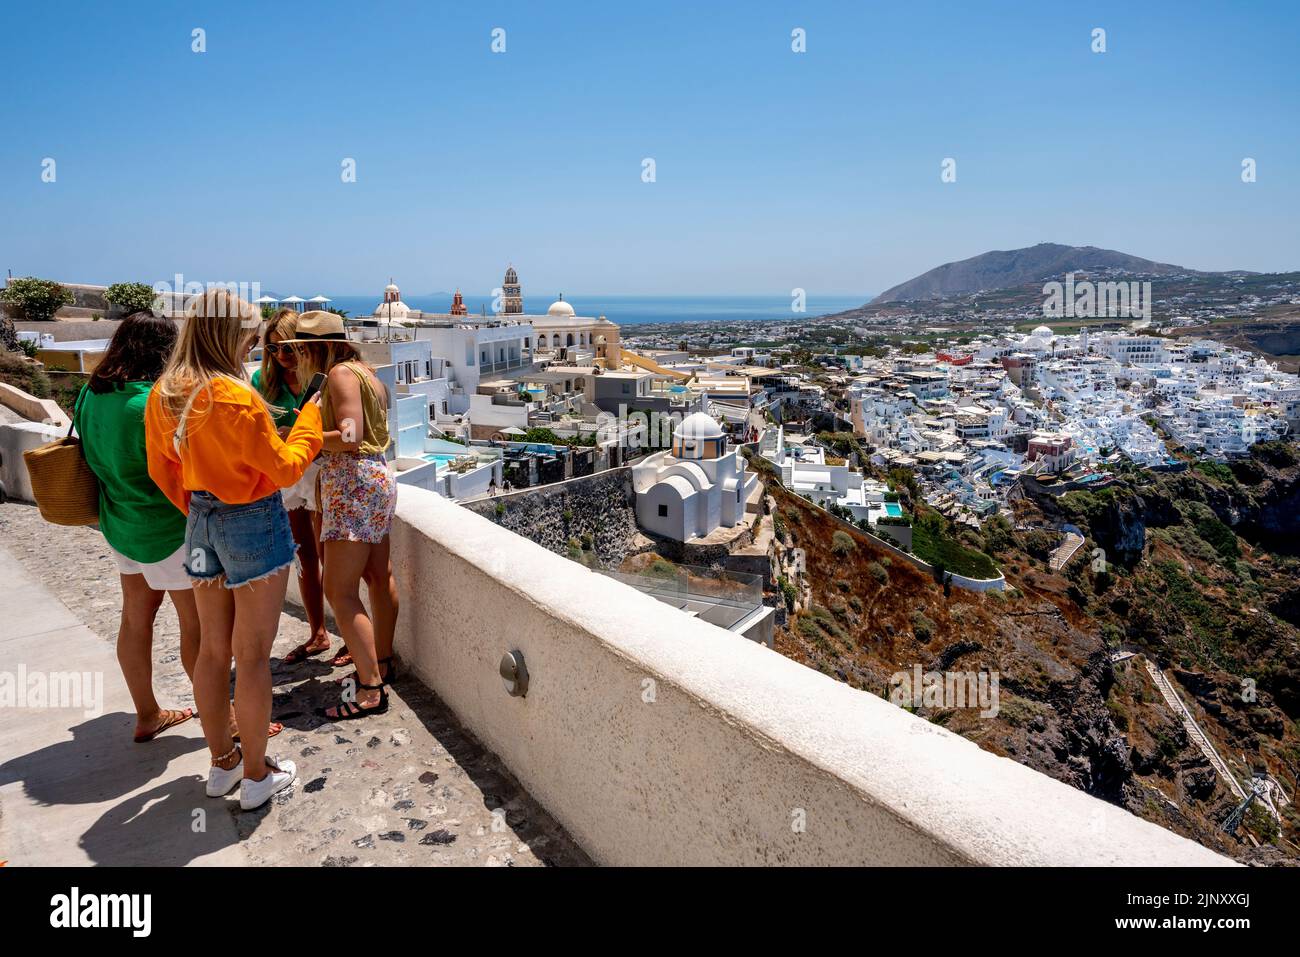 Un grupo de mujeres jóvenes visitantes en Un mirador con vistas a la ciudad principal de Thira en Santorini, las islas griegas, Grecia. Foto de stock